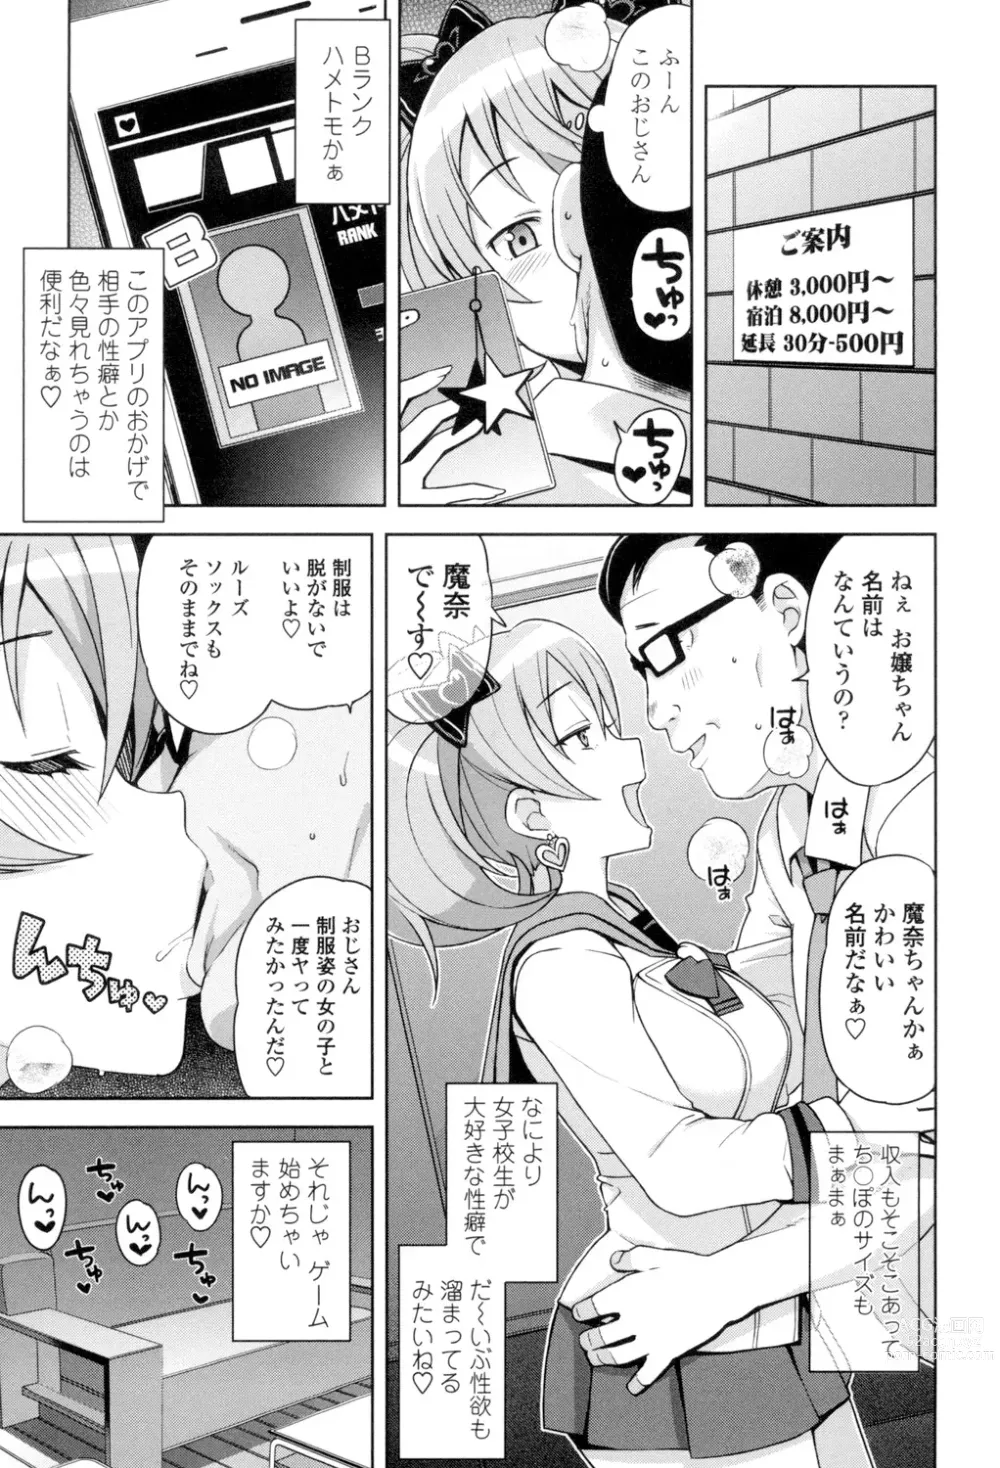 Page 10 of manga Hametomo Collection